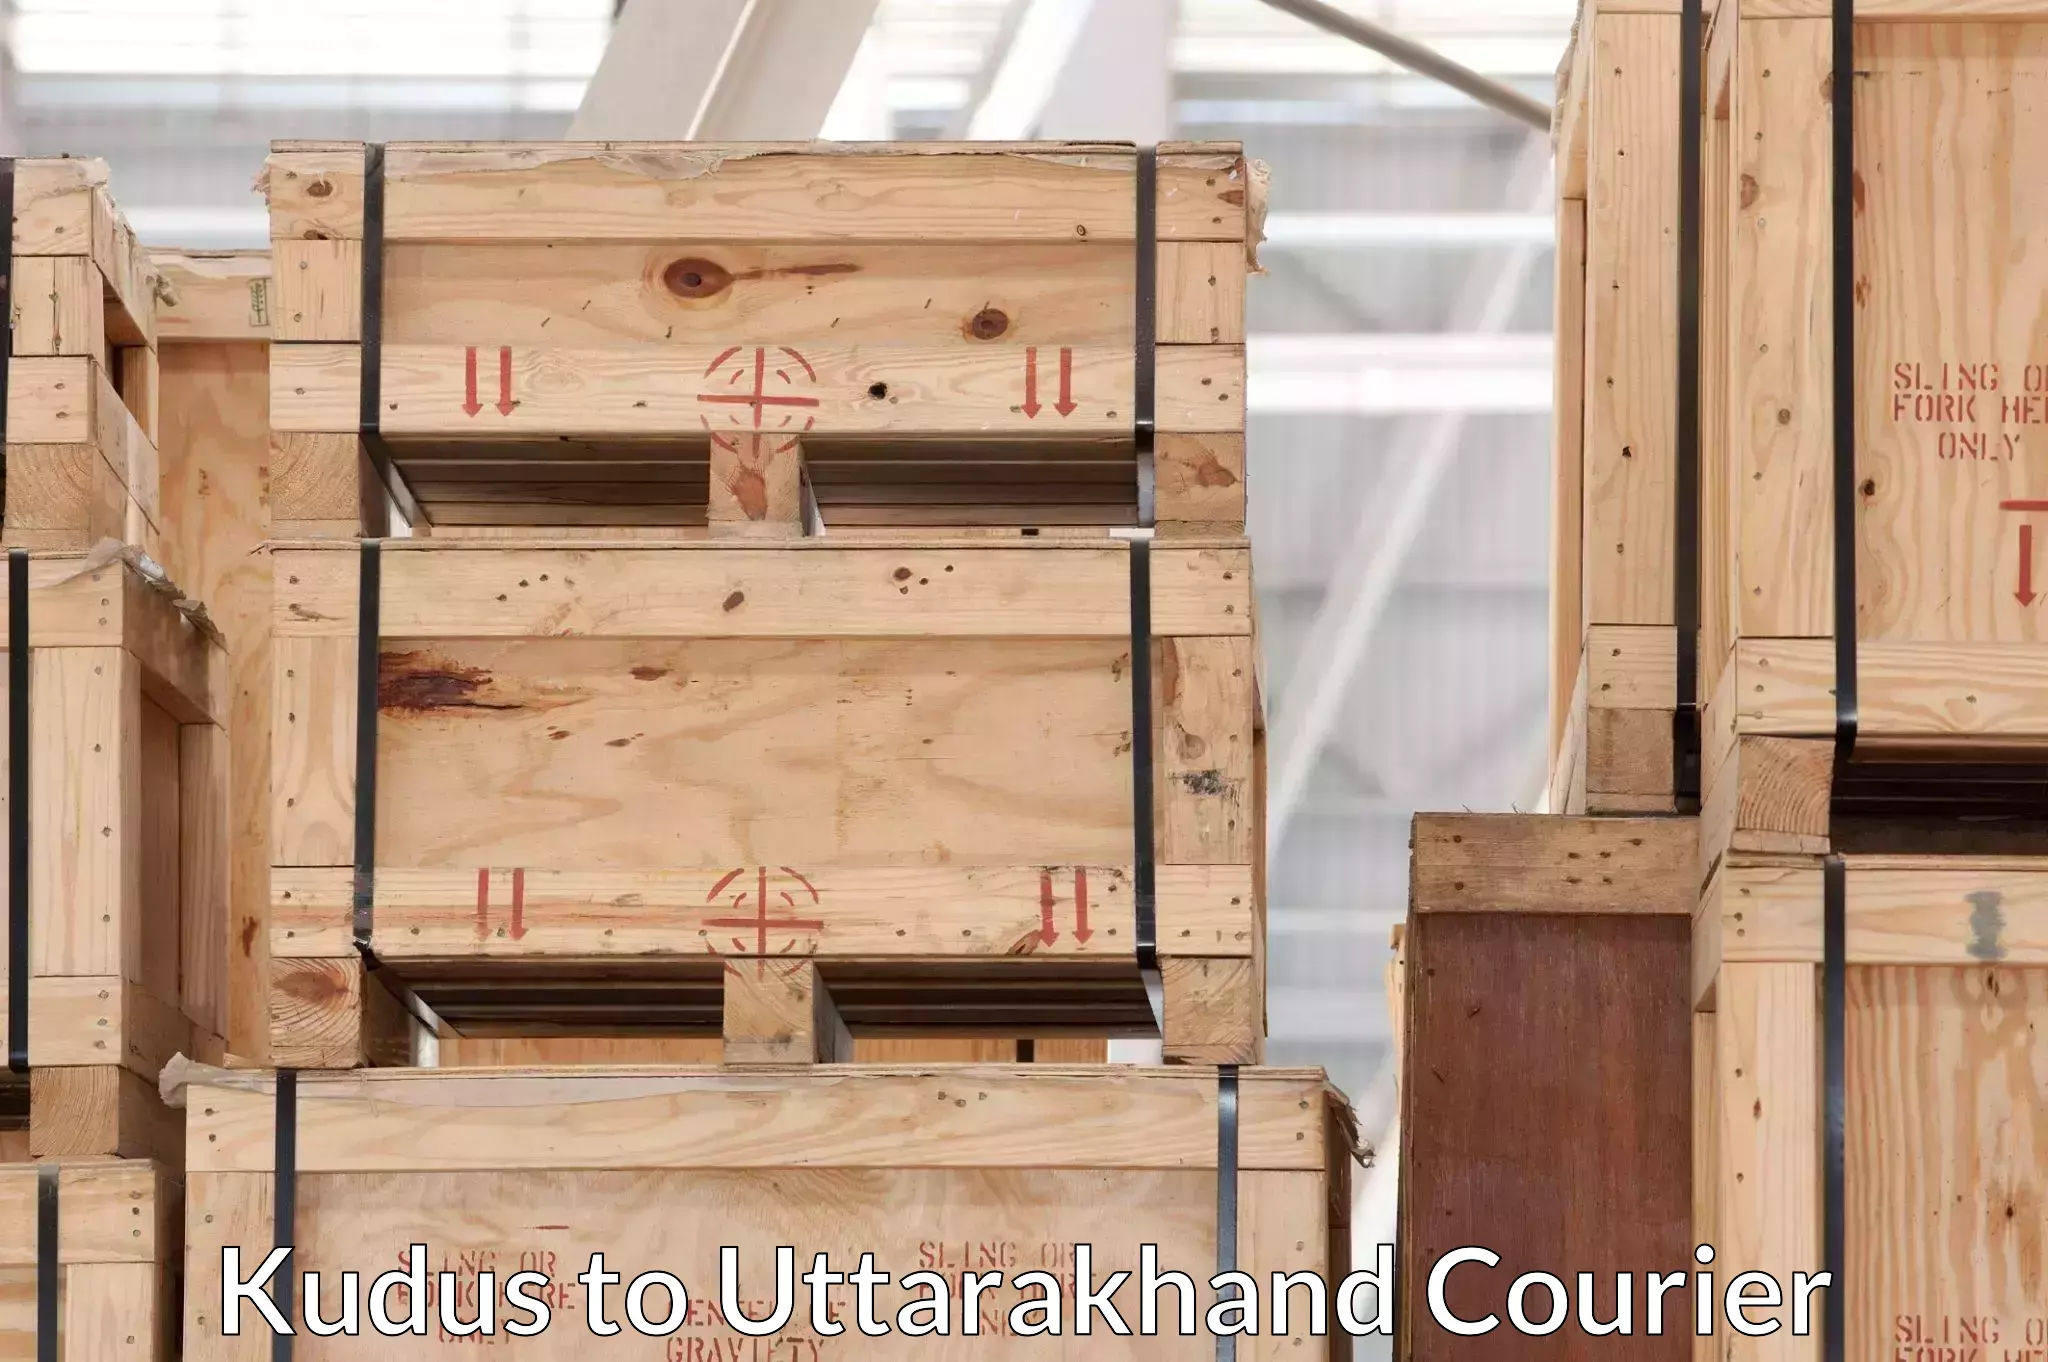 Professional packing services Kudus to Uttarakhand